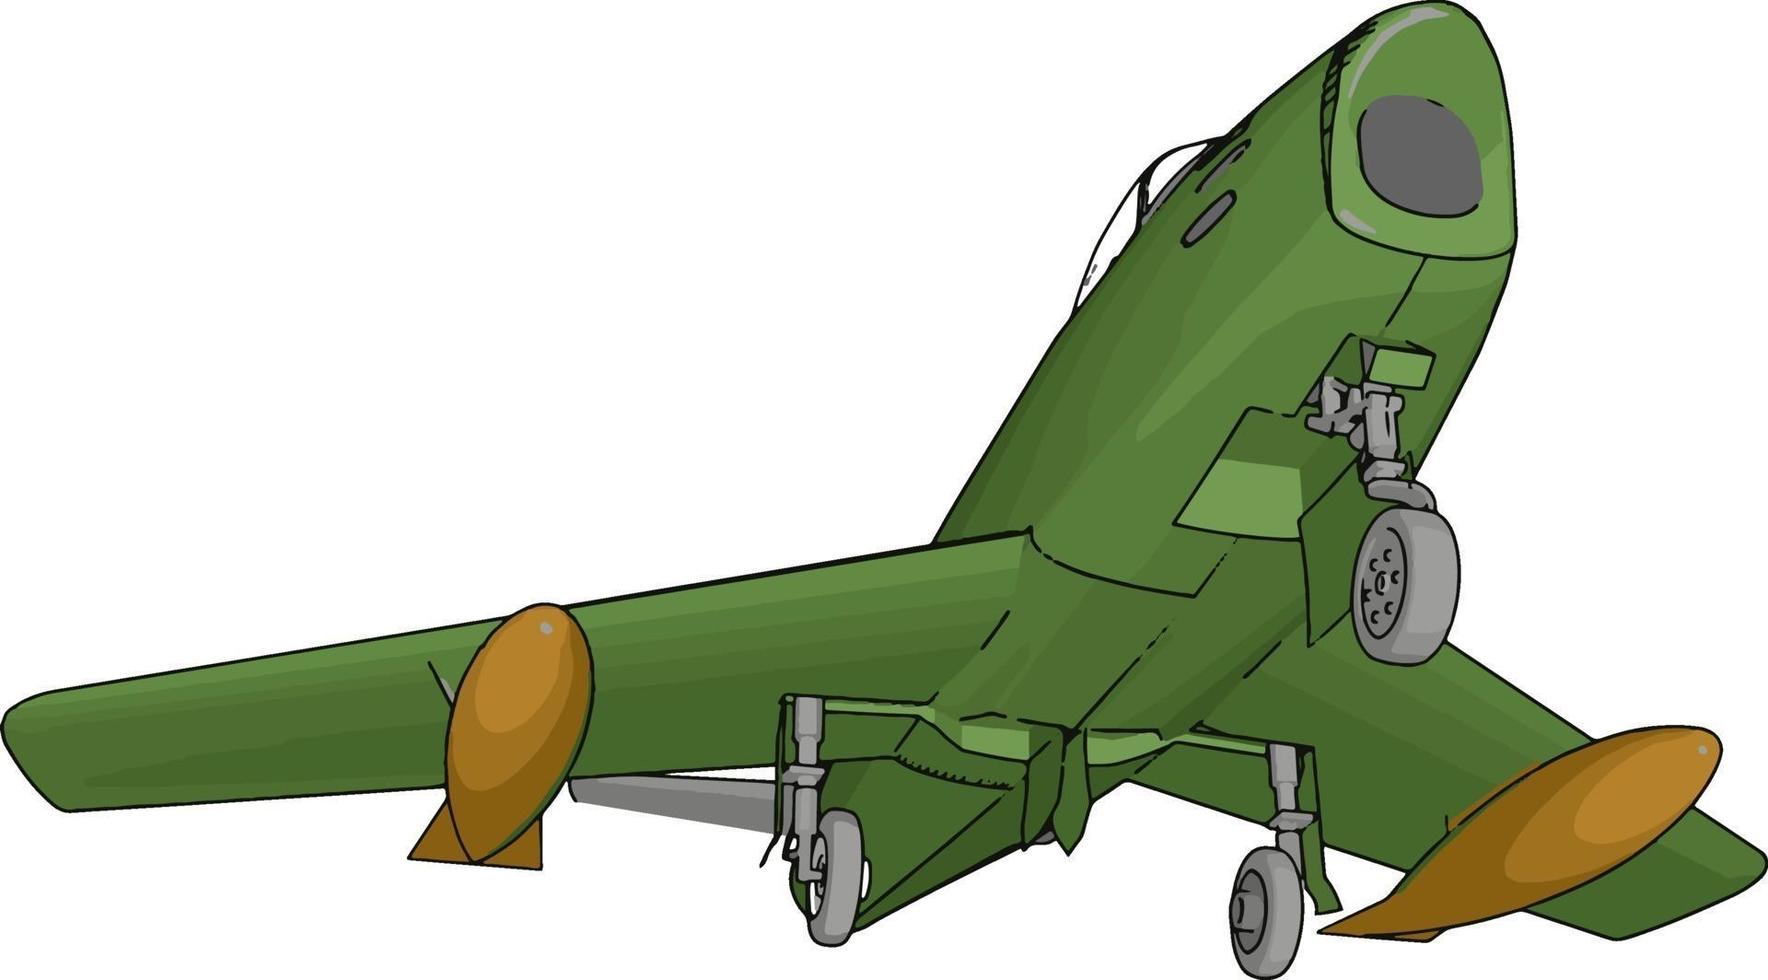 Bombardero verde, ilustración, vector sobre fondo blanco.